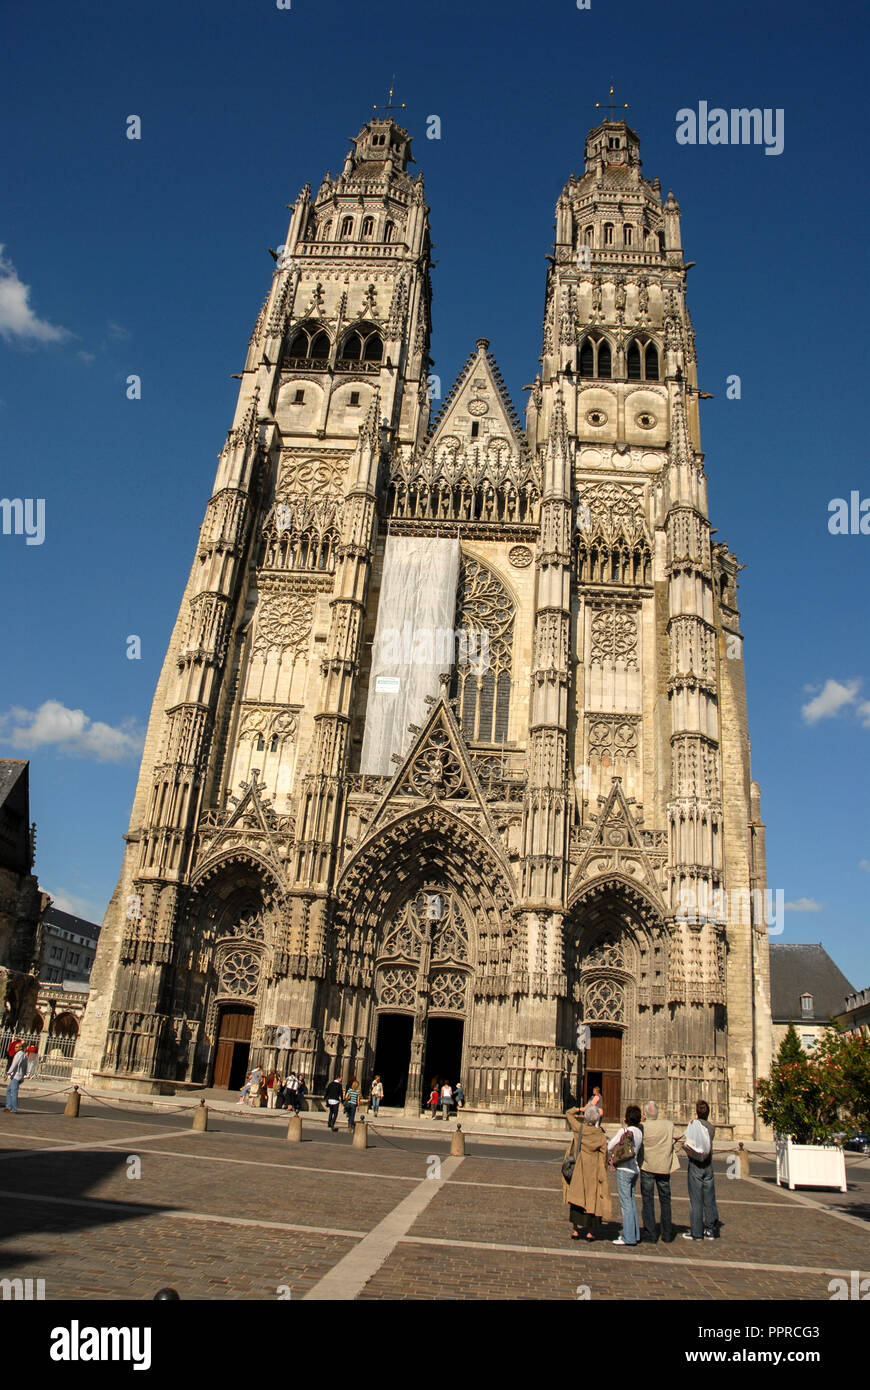 Il Gotico torri gemelle della cattedrale Saint-Gatien de Tours (Saint-Gatien cattedrale di Tours) con 12esimo secolo le basi e le cime del Rinascimento, nel Foto Stock